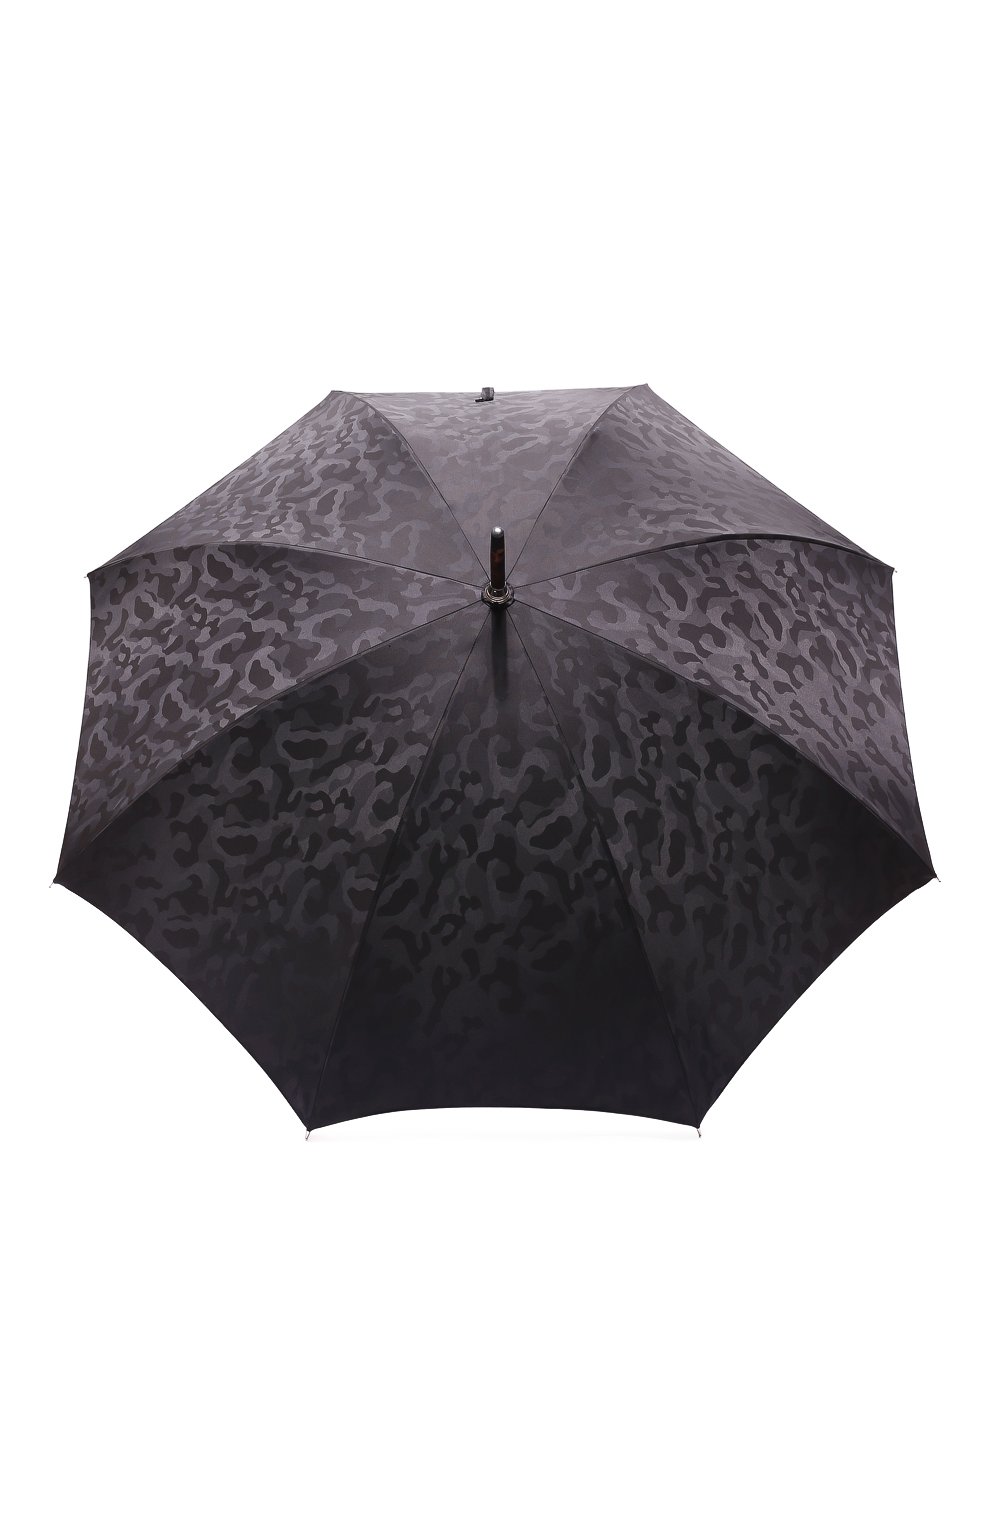 Мужской зонт-трость PASOTTI OMBRELLI черного цвета, арт. 0MITU0 142/MILITARE 11780/142 | Фото 1 (Материал: Текстиль, Синтетический материал, Металл)